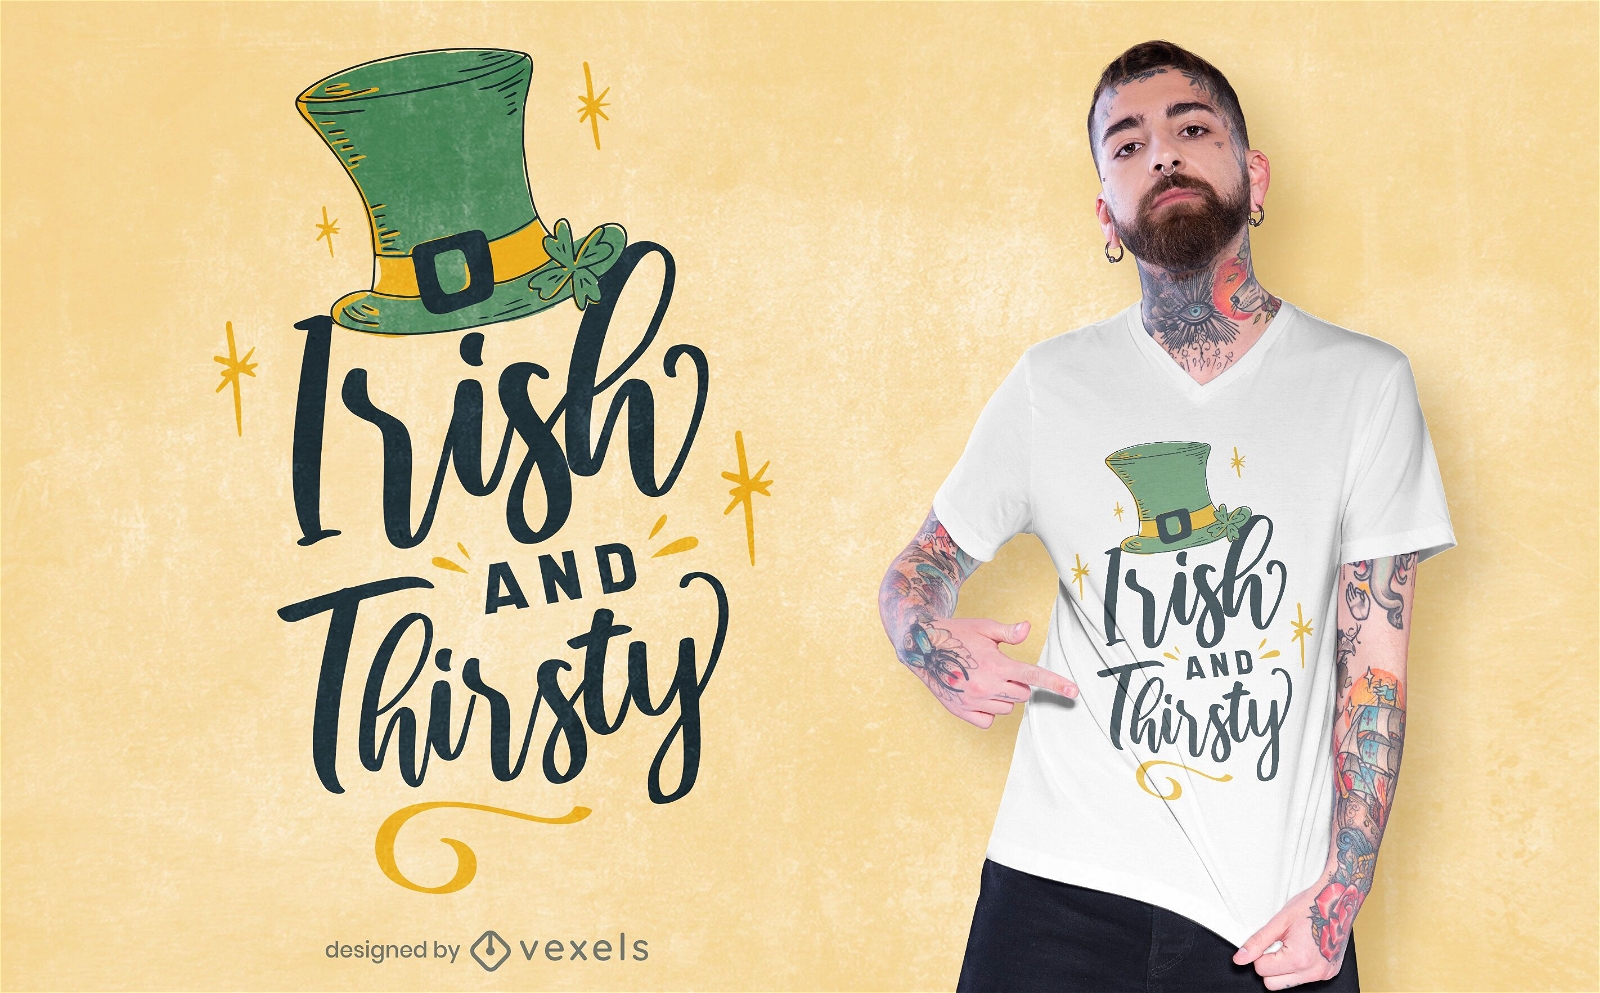 Irish and thirsty t-shirt design